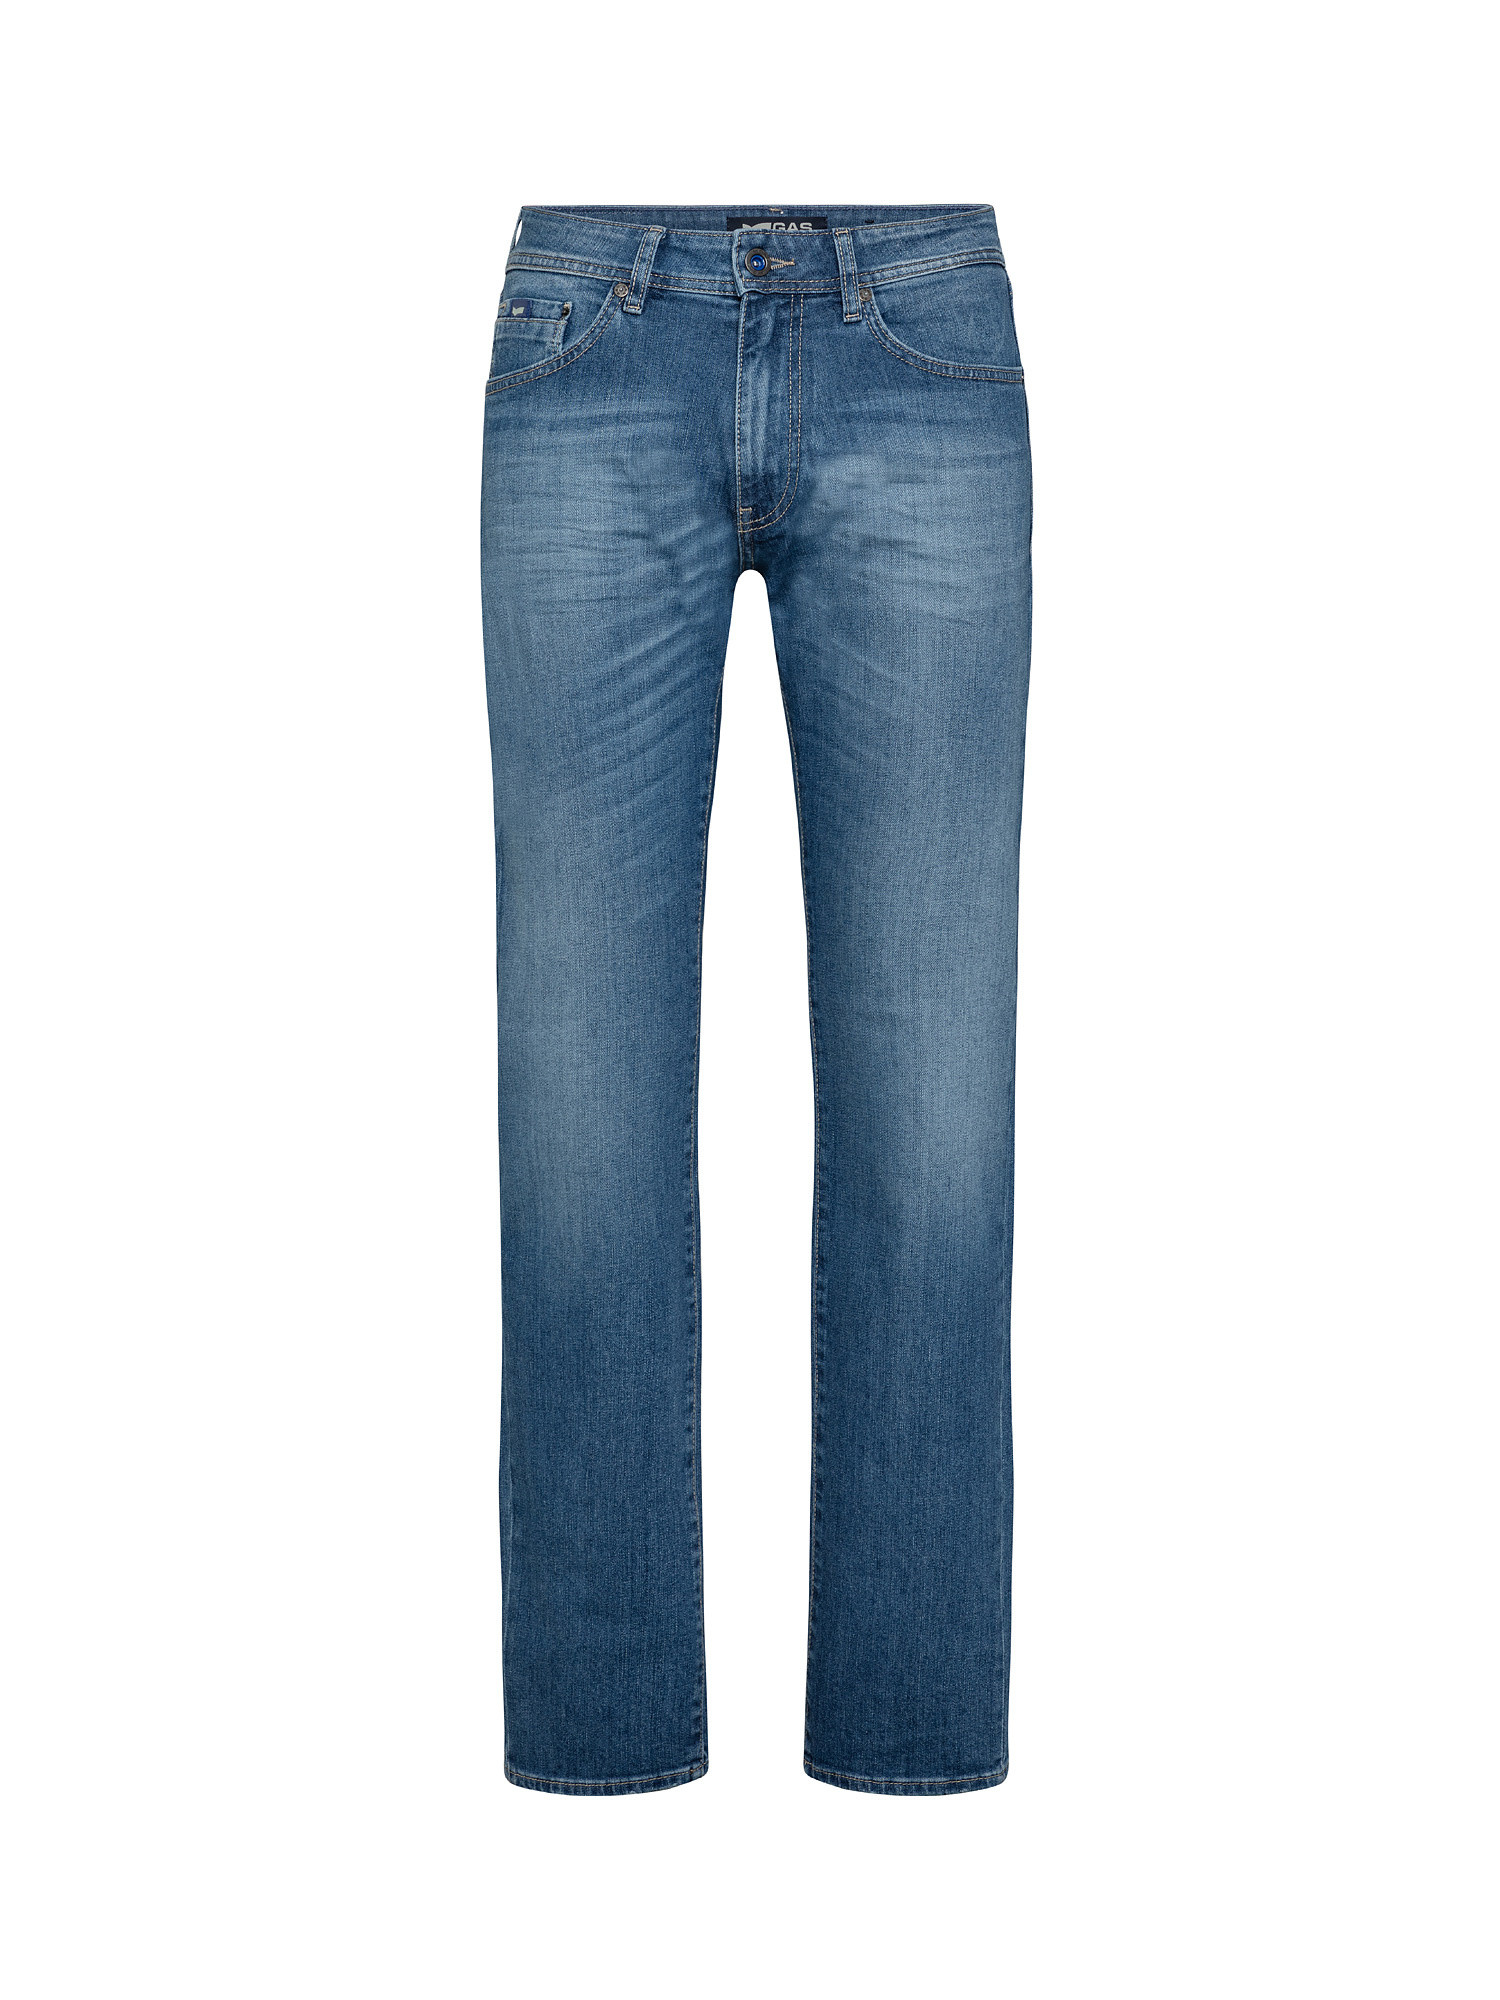 Jeans regular elasticizzati, Denim, large image number 0